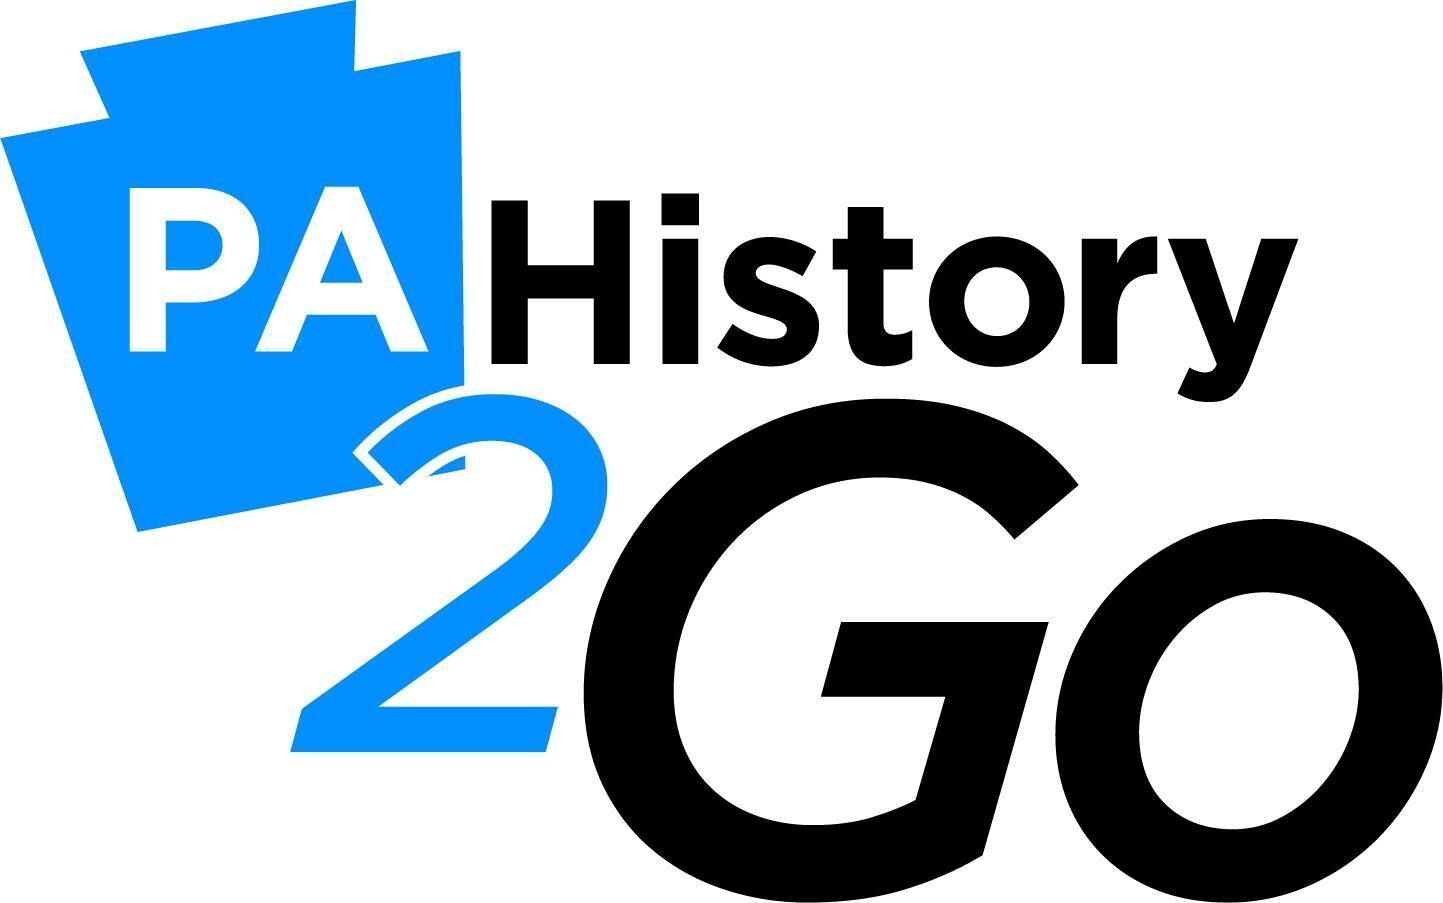 PA History 2 Go